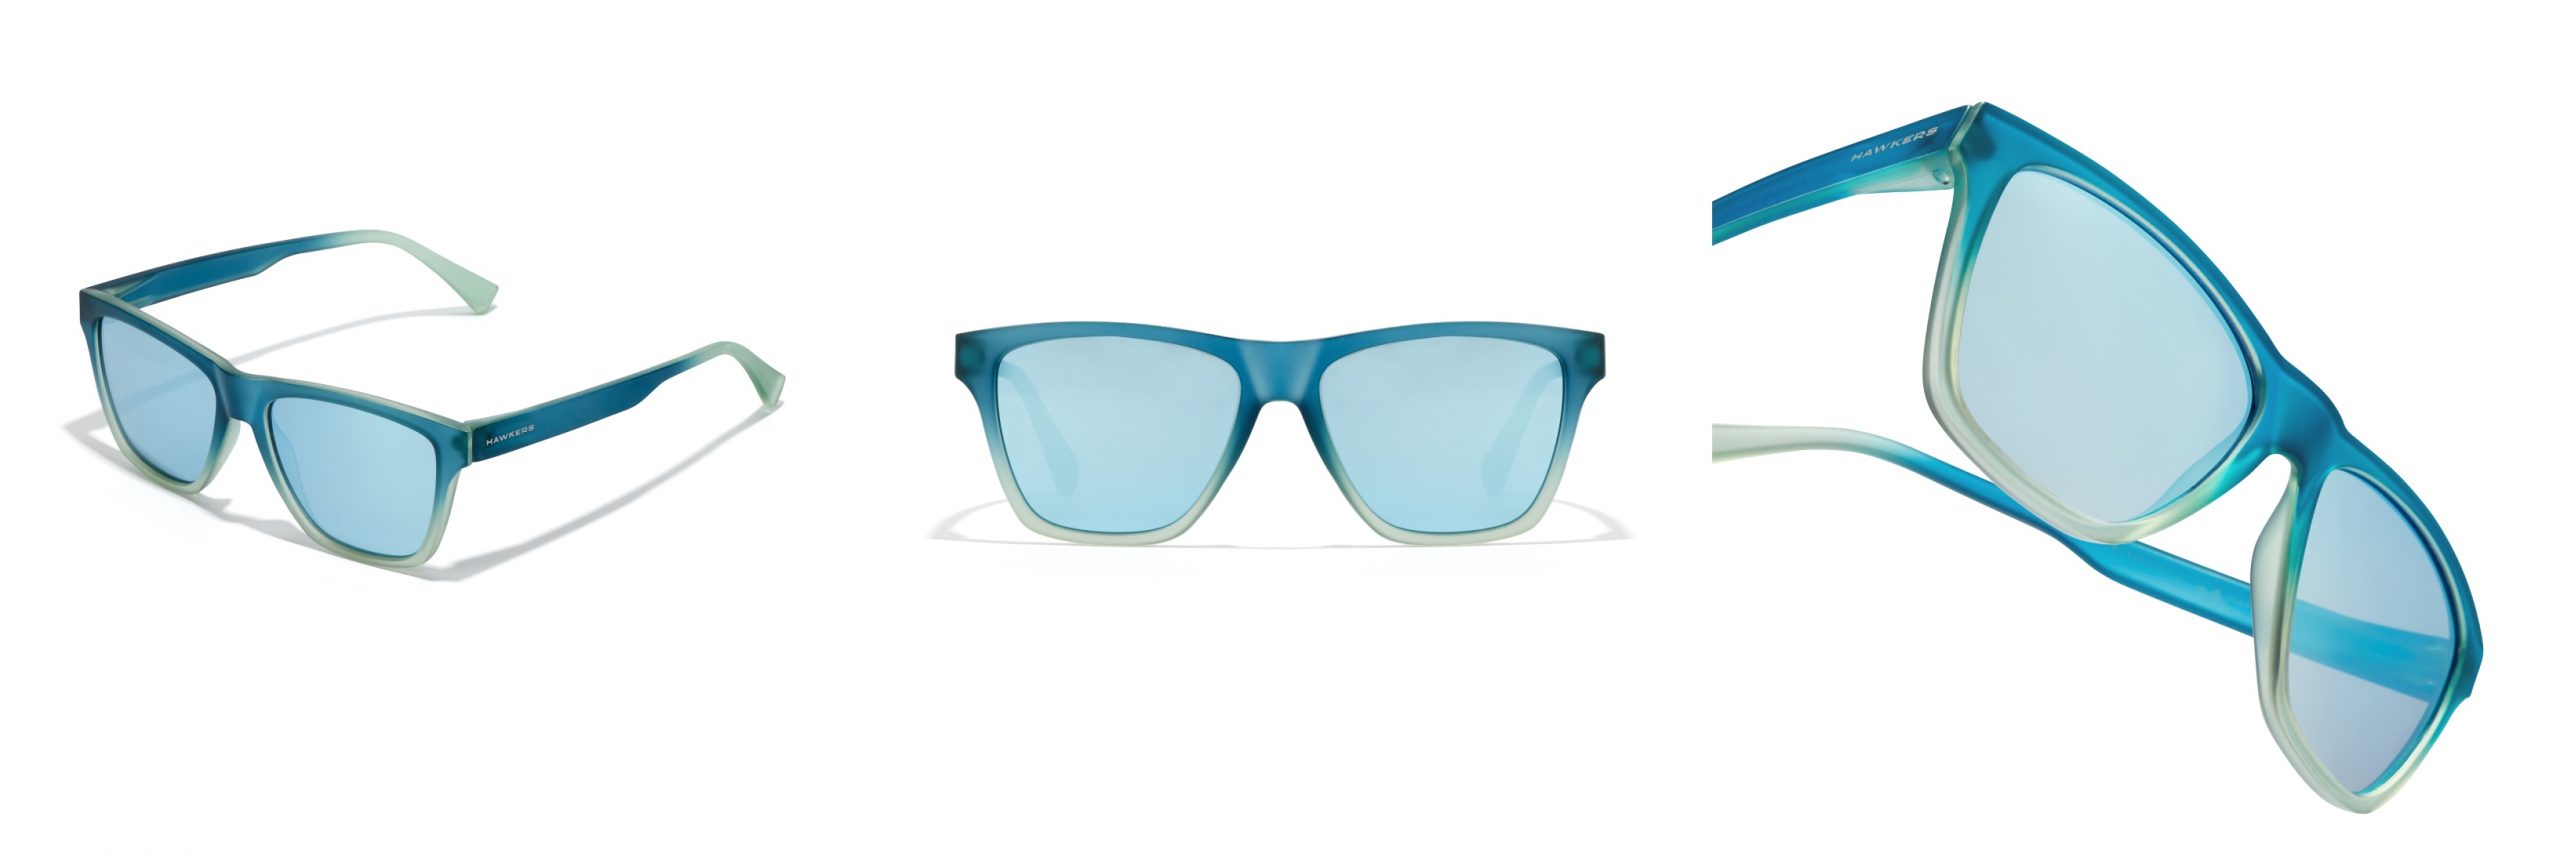 Gafas de la colección de Hawkers x Paula Echevarría combinan lentes de espejo azul y diferentes tonos de azules transparentes en la montura.